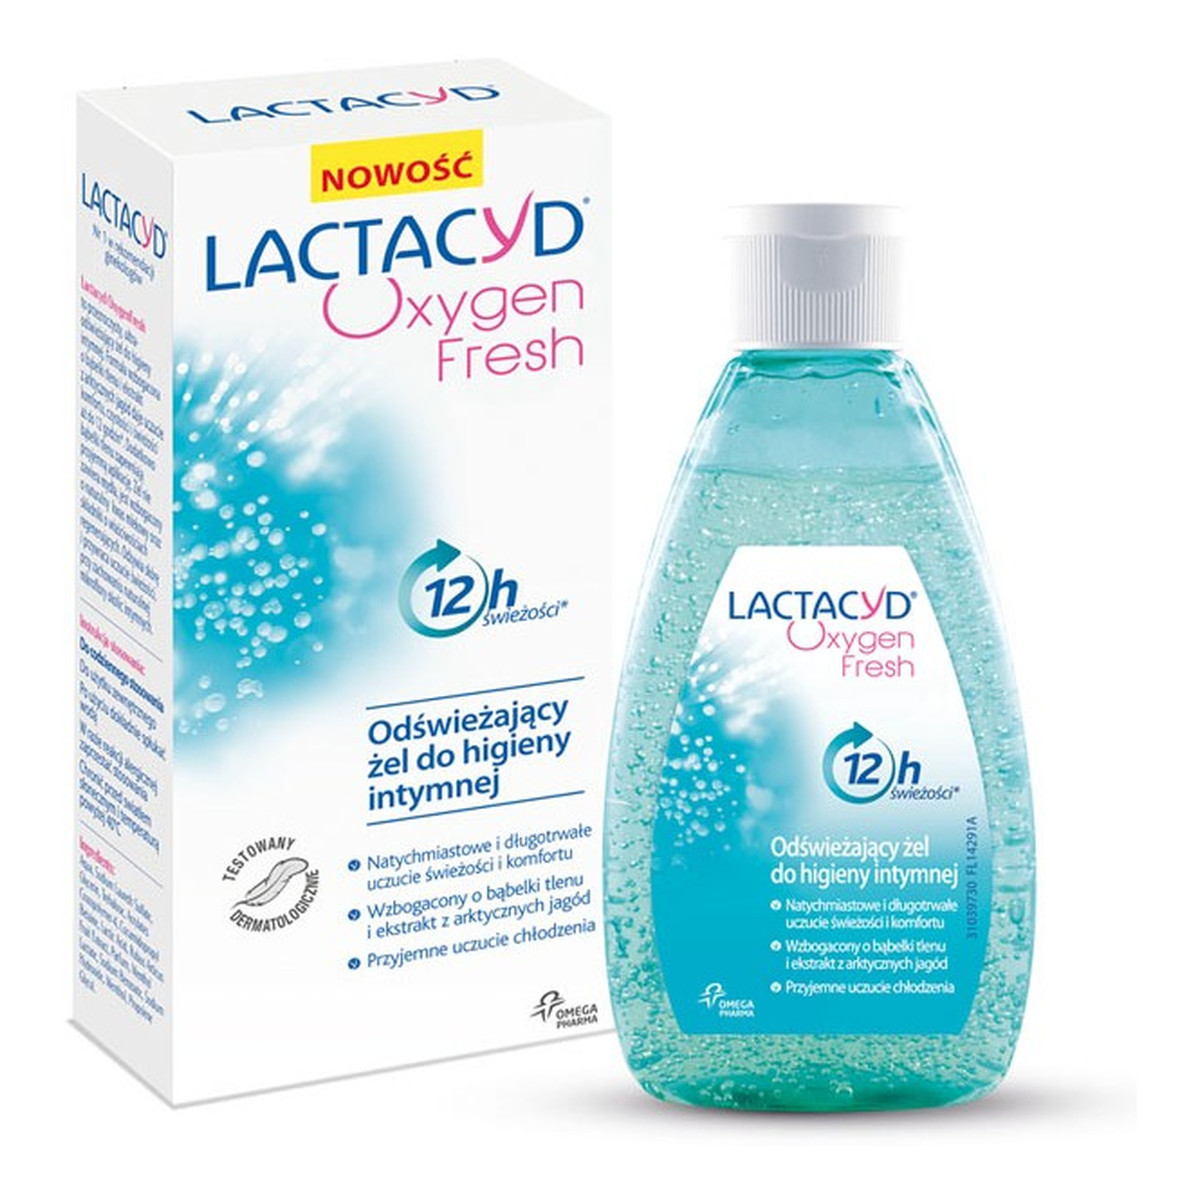 Lactacyd Oxygen Fresh odświeżający żel do higieny intymnej 200ml